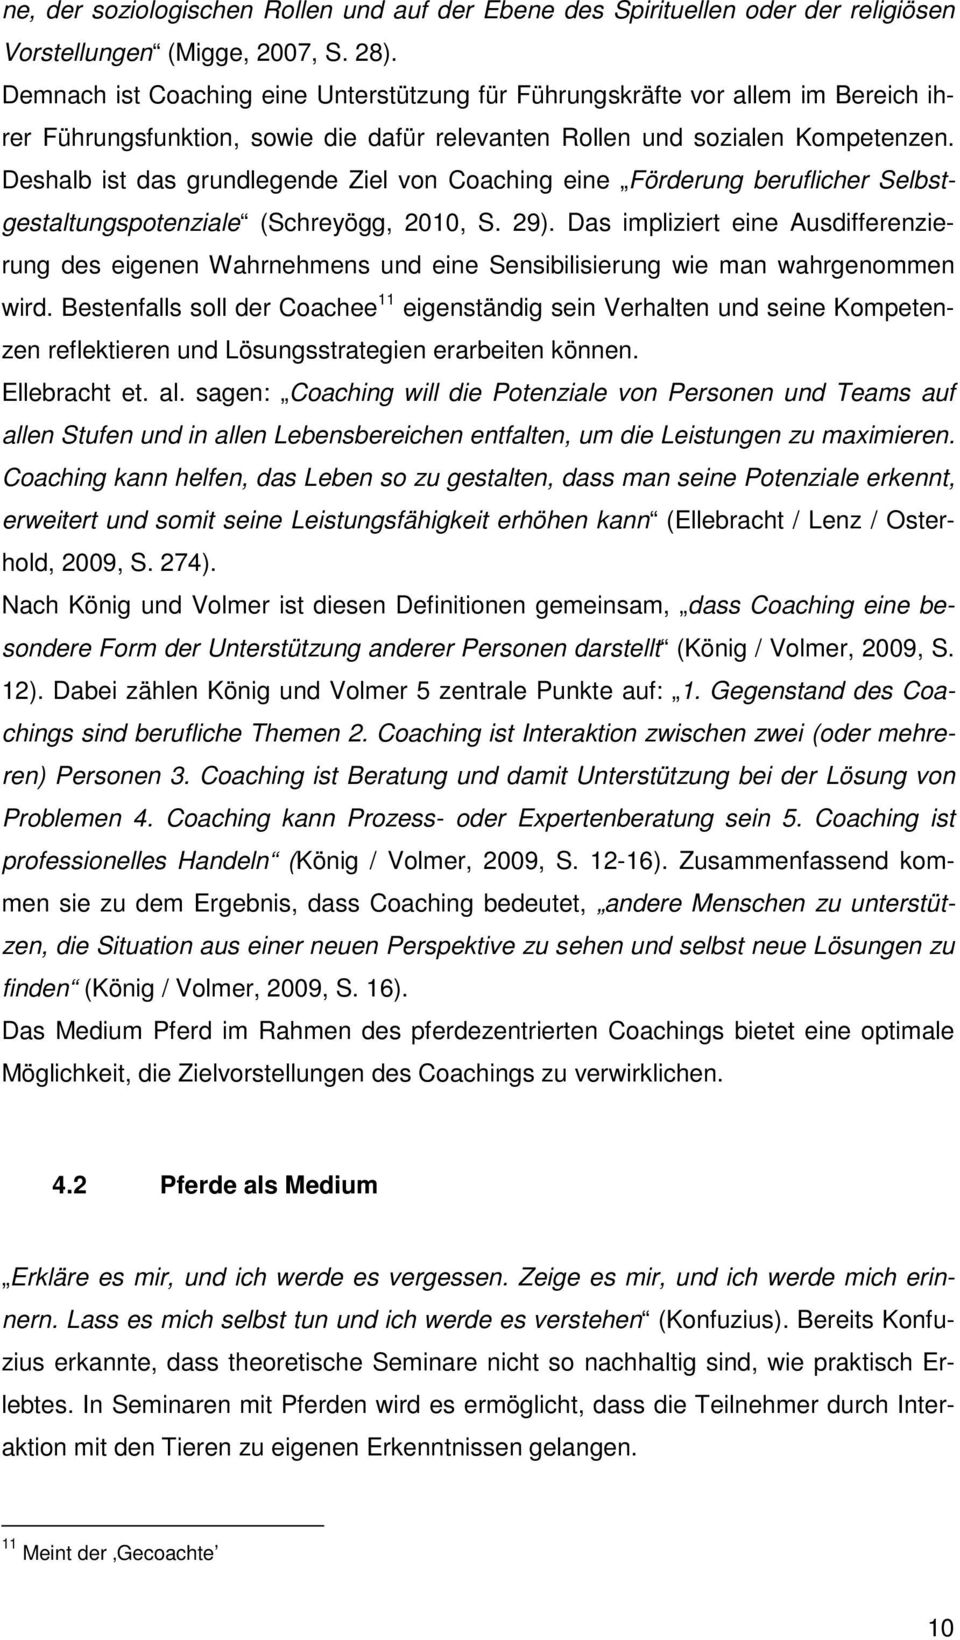 Deshalb ist das grundlegende Ziel von Coaching eine Förderung beruflicher Selbstgestaltungspotenziale (Schreyögg, 2010, S. 29).